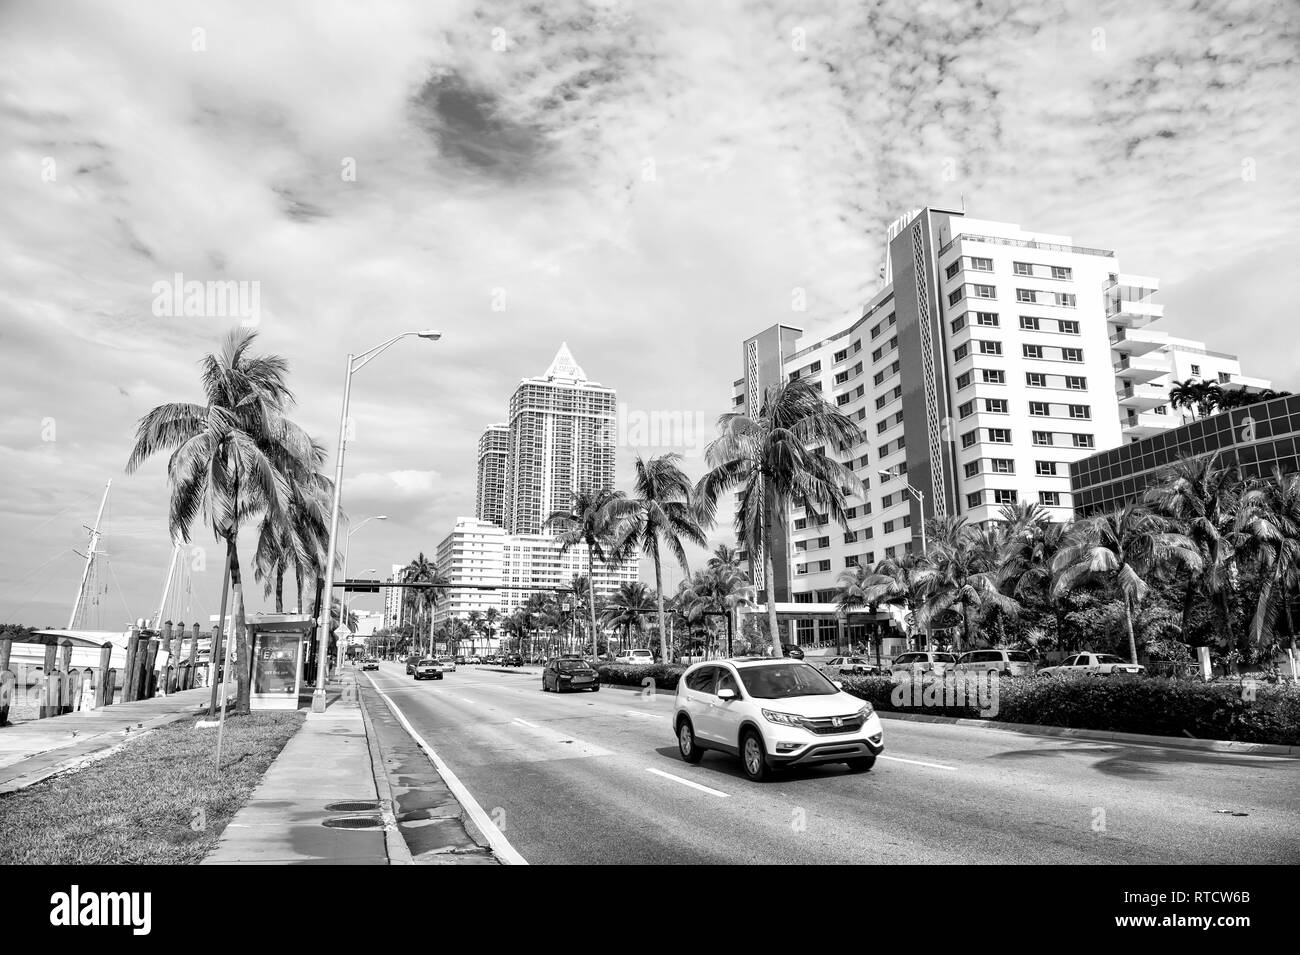 Miami, USA - 10 janvier 2016 : voitures roulant sur route ville le long de la côte de la mer avec des bâtiments modernes, le vert des palmiers et promenade pavée sur fond de ciel nuageux. Le voyage. Des vacances d'été, Colins dur Banque D'Images